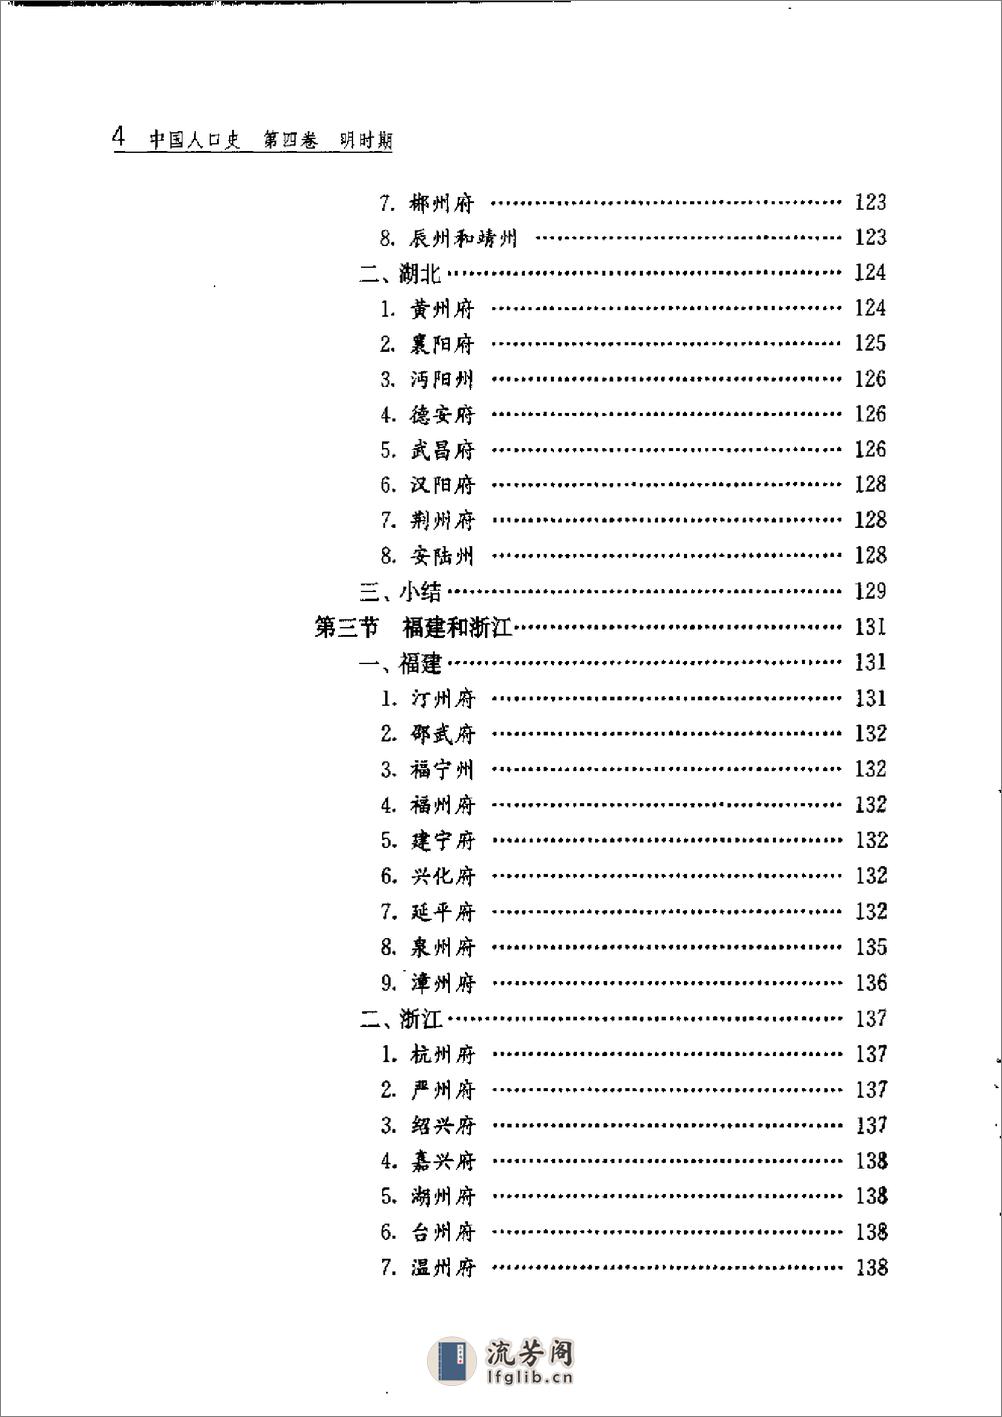 中国人口史 第4卷 明时期 - 第9页预览图